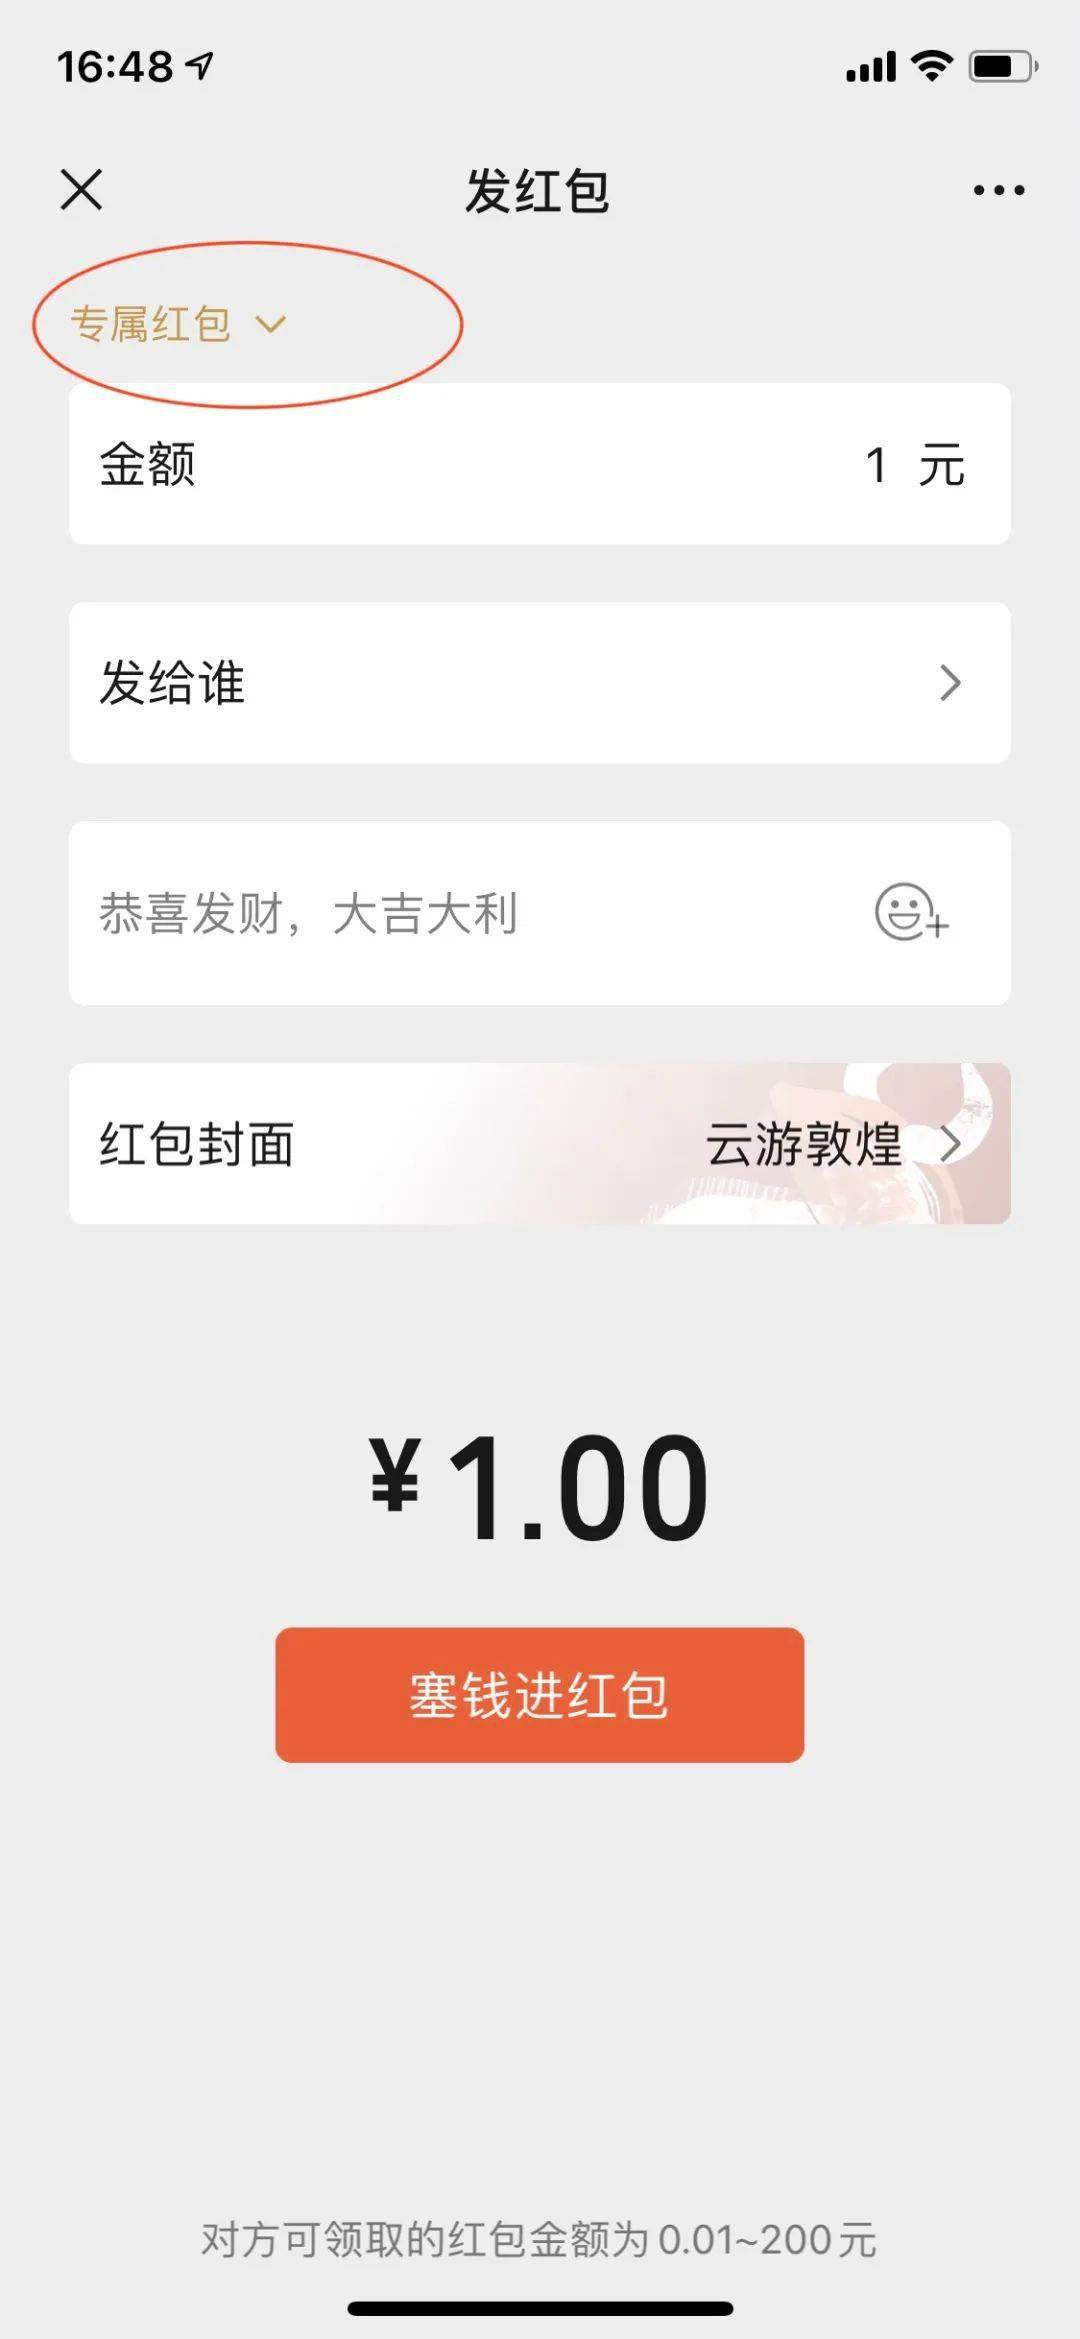 微信新增惠民服务页 聊天群内专属红包正式上线